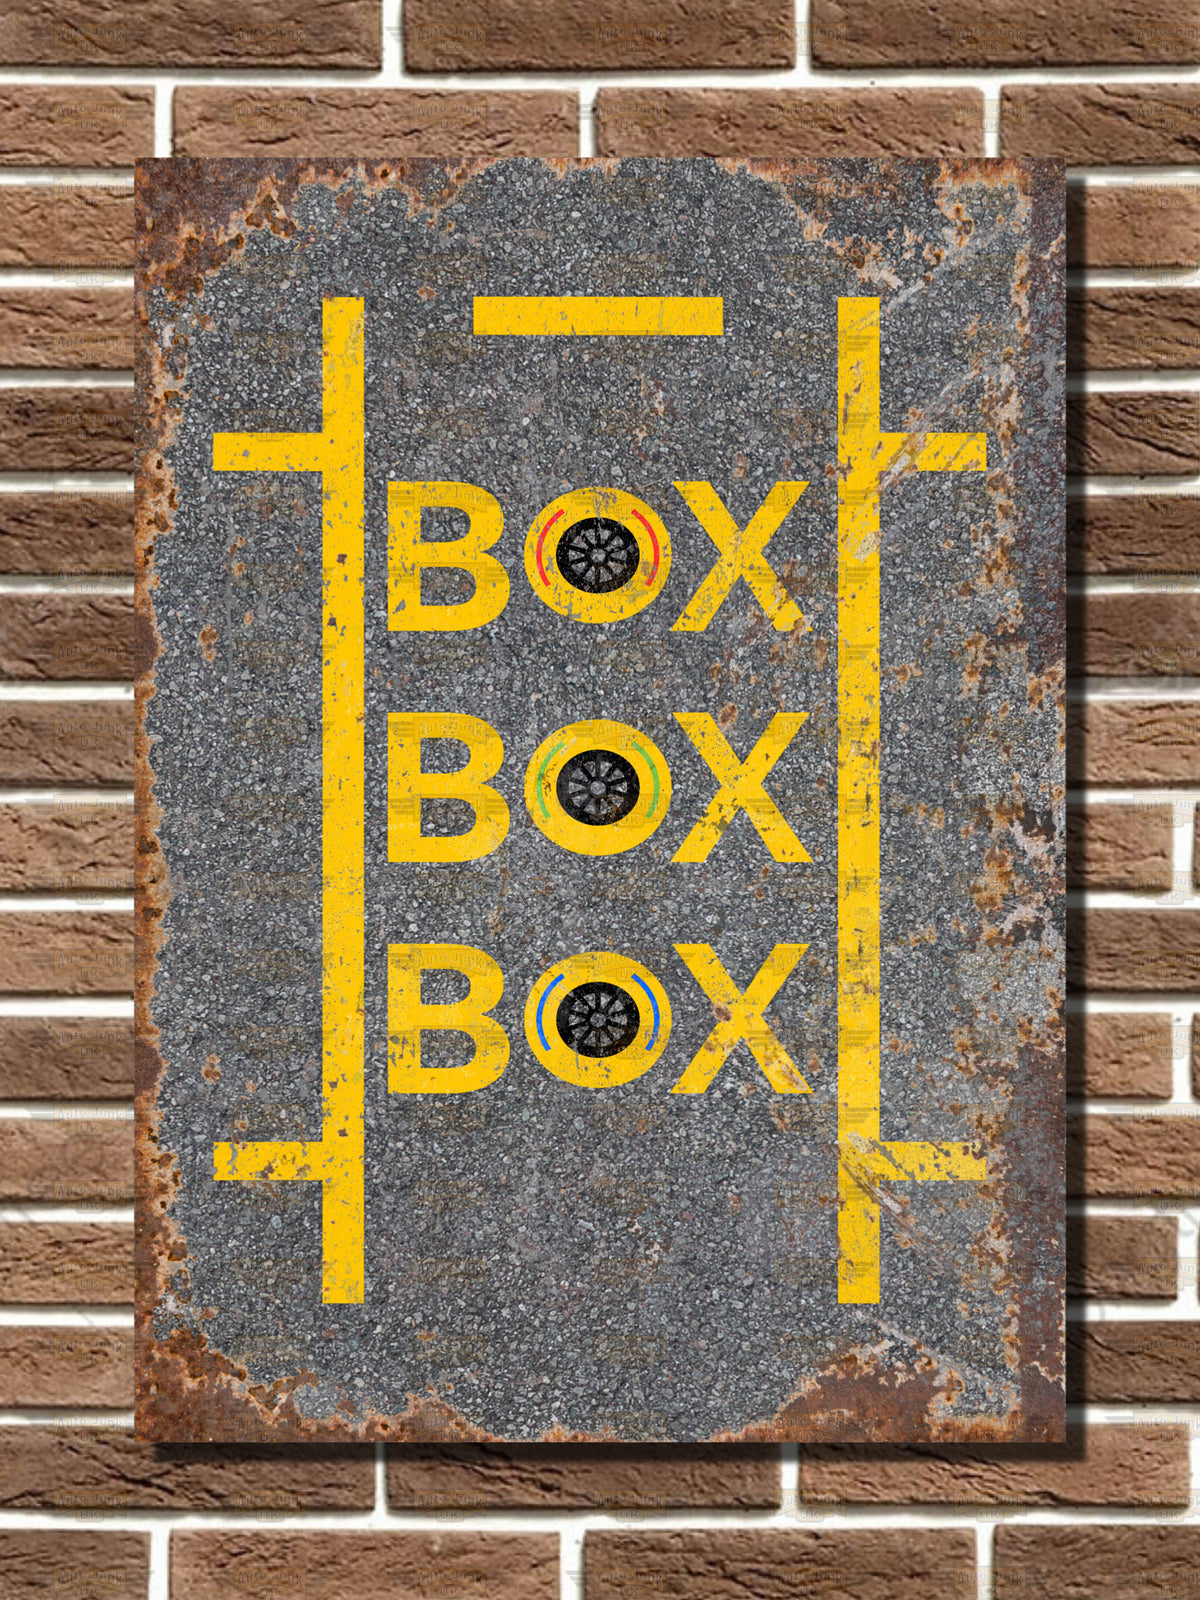 Pit Stop "BOX BOX BOX" Metal Sign